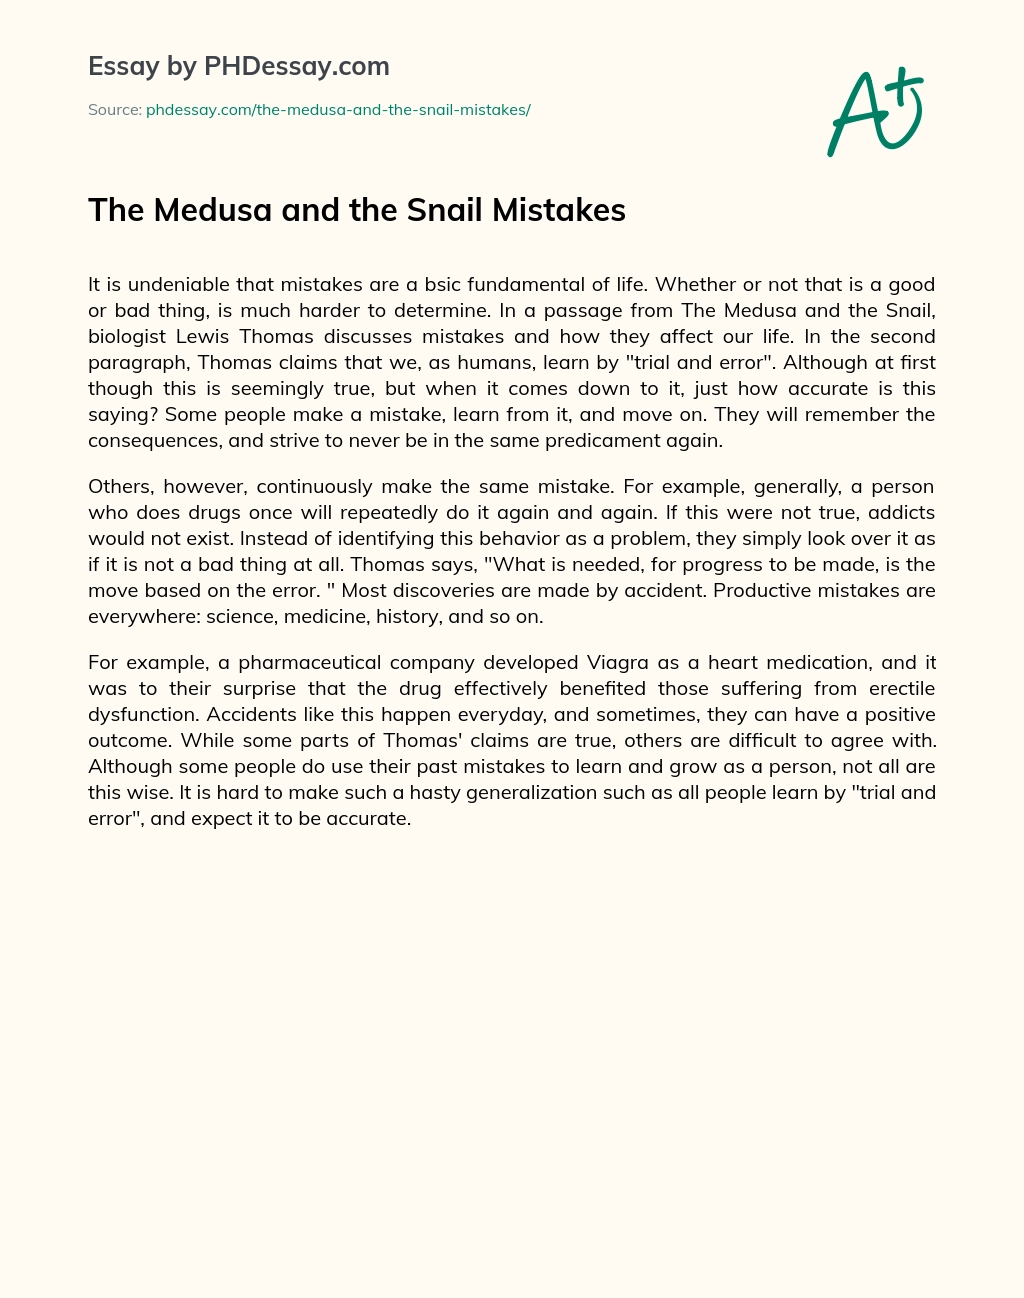 The Medusa and the Snail Mistakes essay